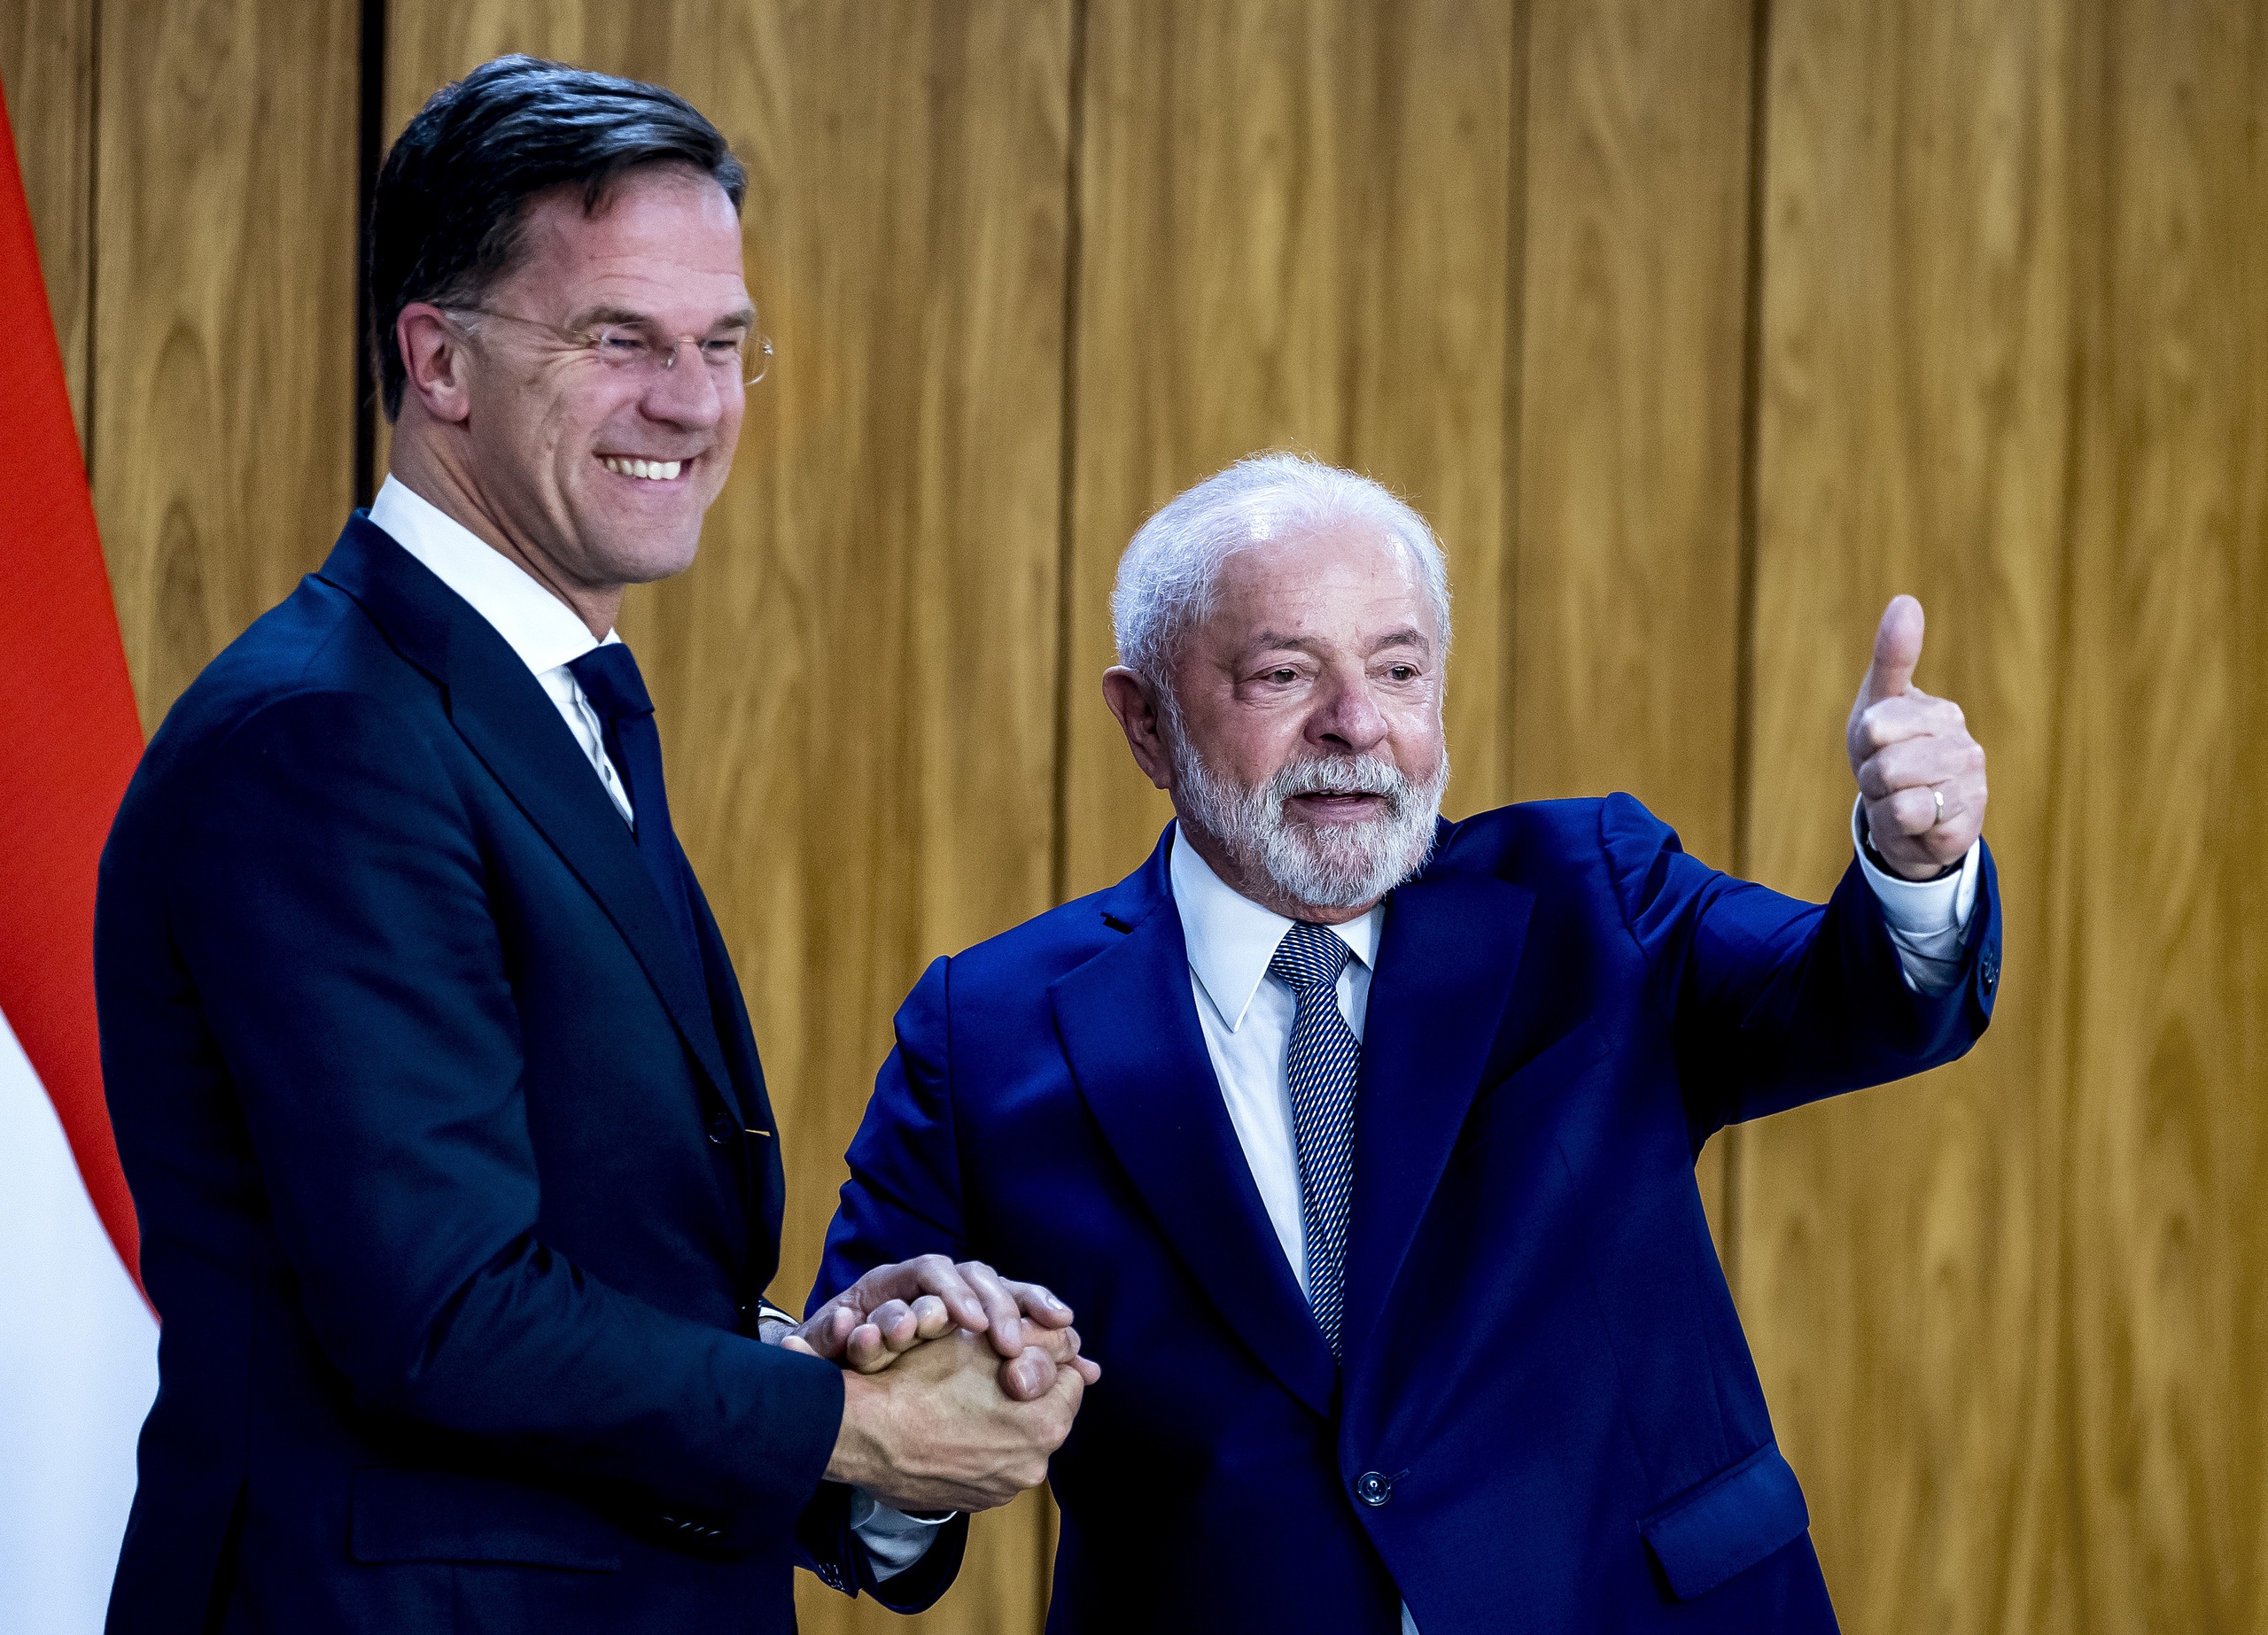 Europa lijkt bezig met een diplomatiek offensief in Zuid-Amerika. Dat blijkt uit een analyse van Politico. De afgelopen maanden zijn verschillende Europese leiders afgereisd naar het continent, zoals premier Rutte die onlangs naar Brazilië is gegaan voor een ontmoeting met president Lula. 